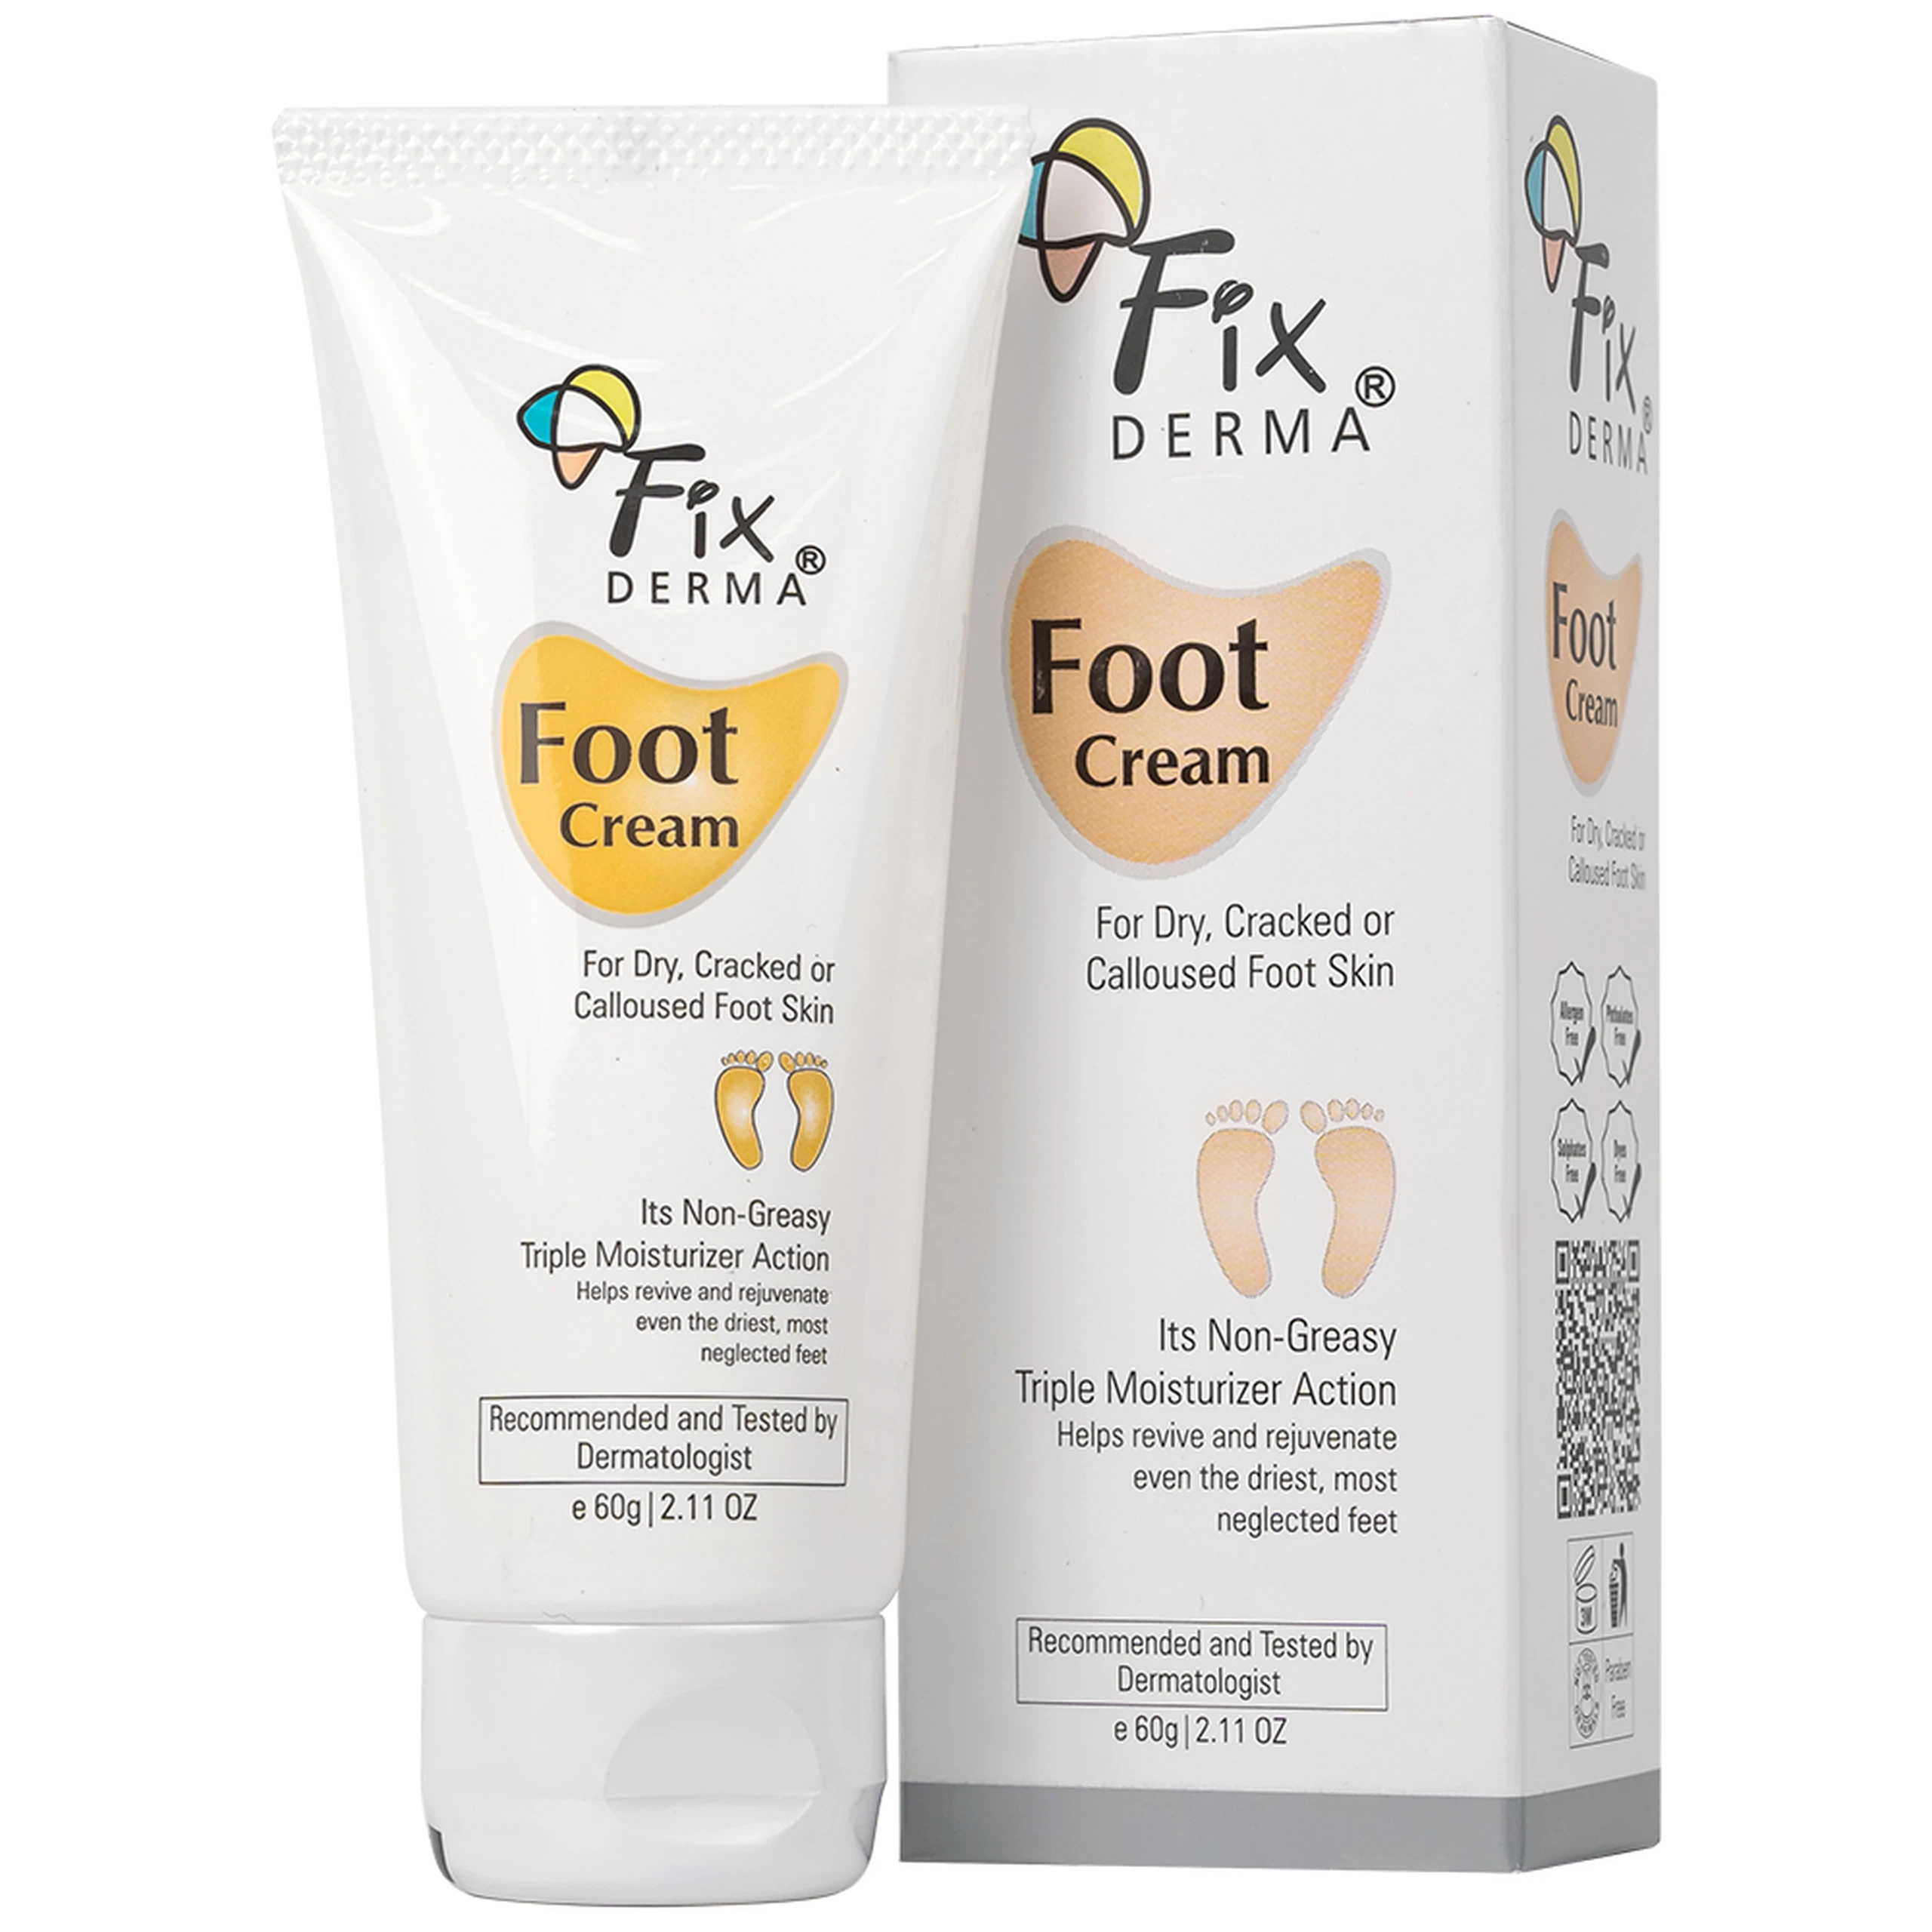 Kem dưỡng chống nứt gót chân Fixderma Foot Cream cung cấp độ ẩm, làm mềm da gót chân (60g)